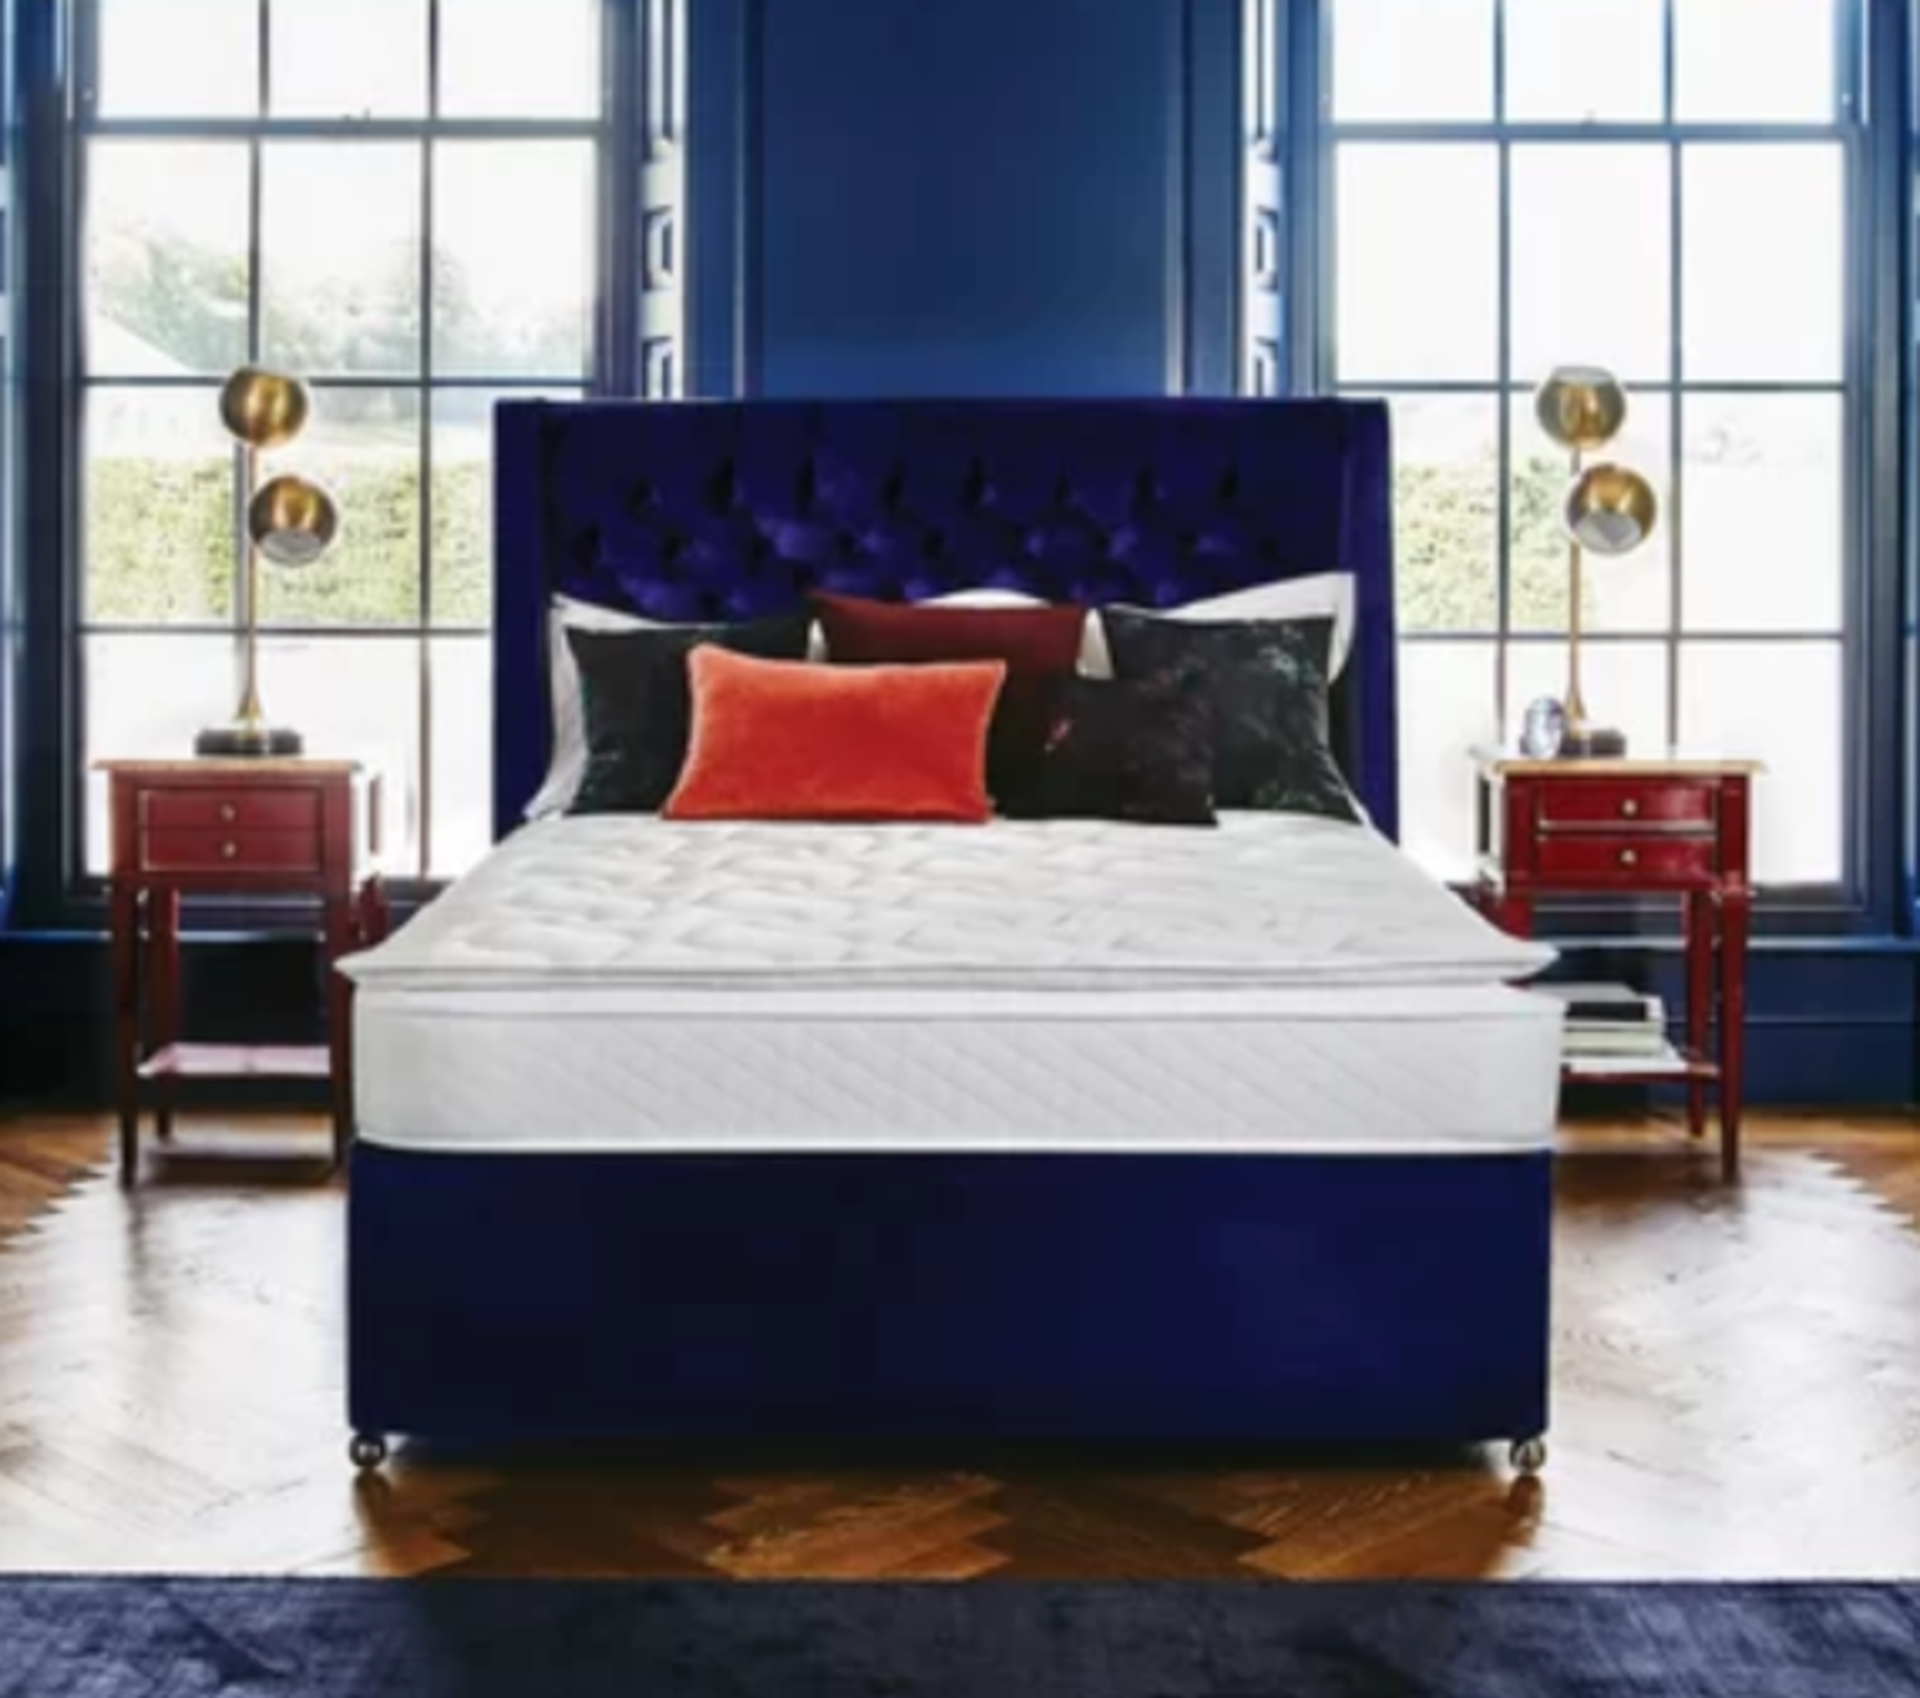 Sleepeezee CoolGel Pillow-Top Superb 1000 Mattress. Superking. This mattress benefits from a - Image 2 of 2